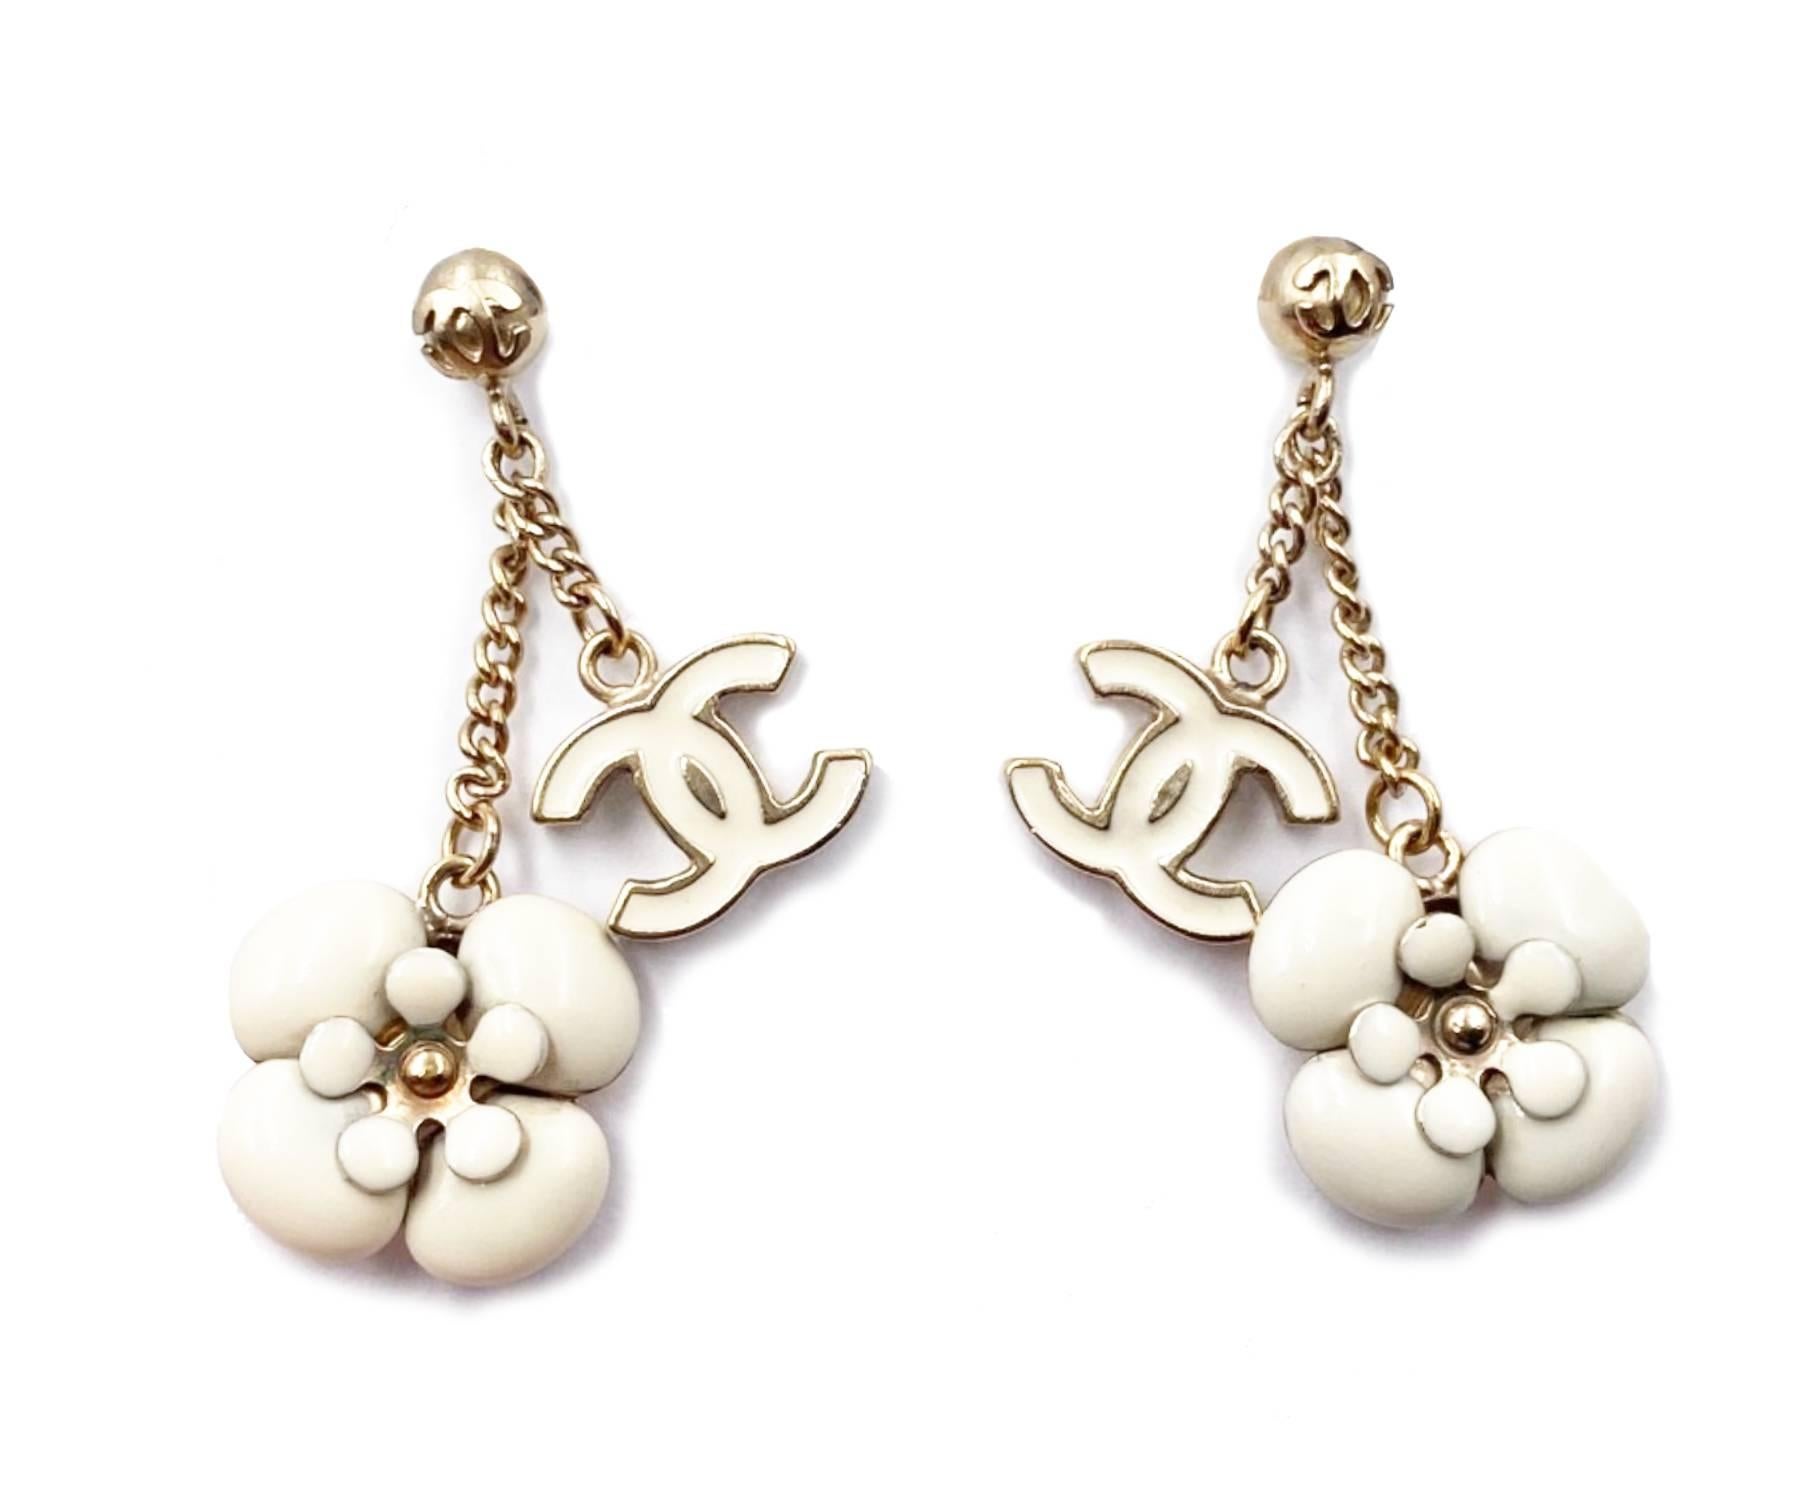 Chanel Gold plattiert CC Elfenbein Kamelie Blume baumeln  Ohrringe

*Markierung 06
*Hergestellt in Italien

-Sie ist ungefähr 1,5